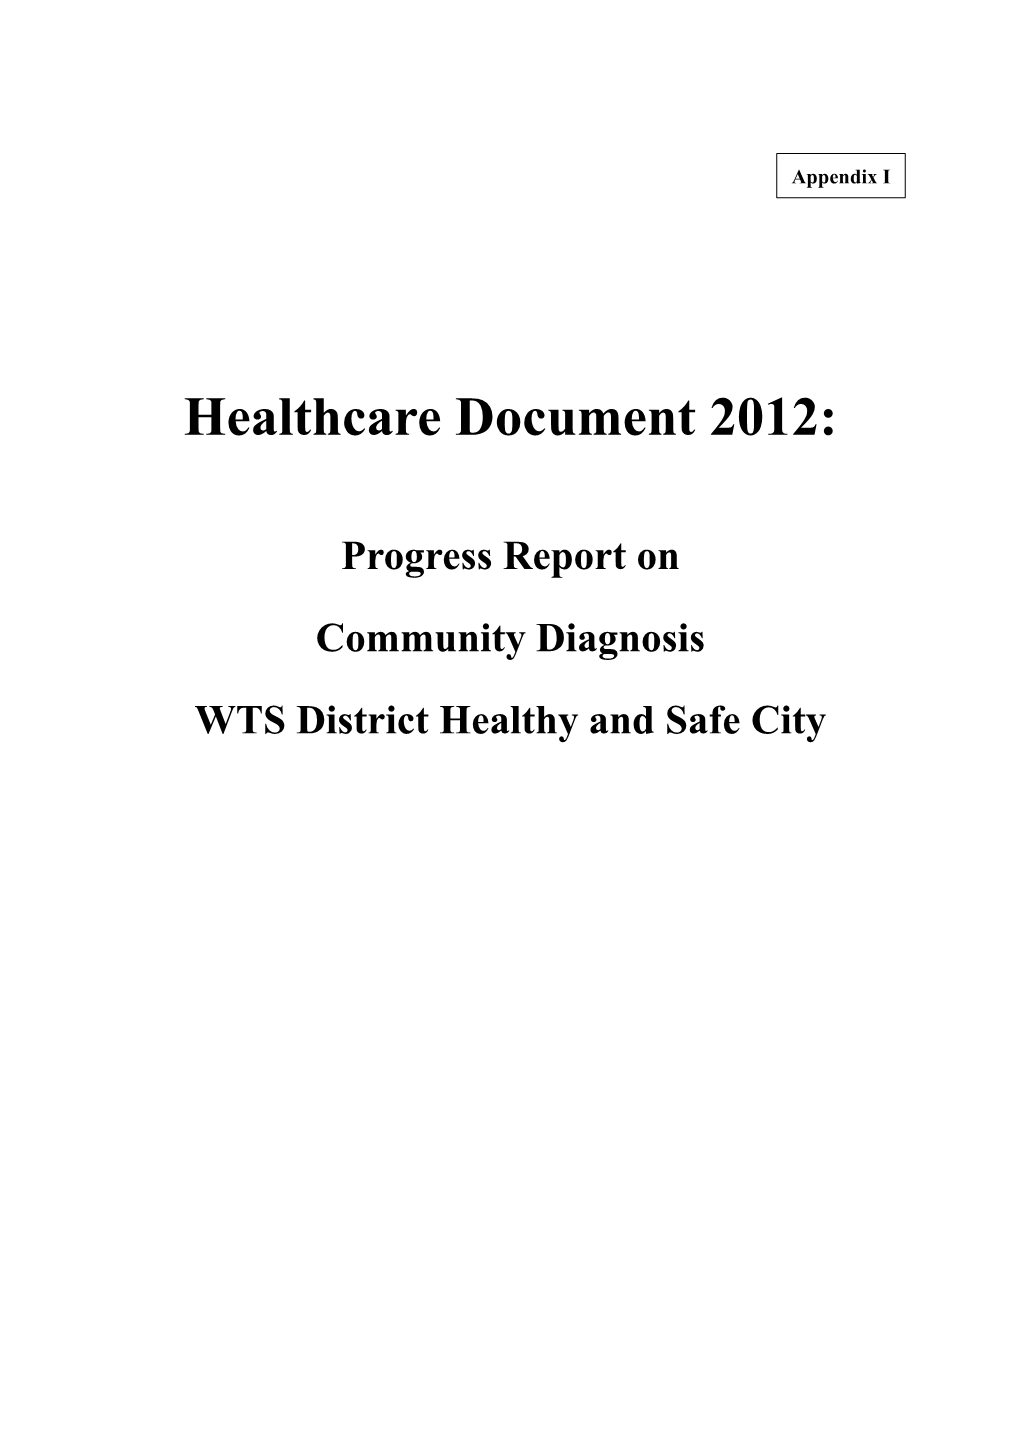 Healthcare Document 2012